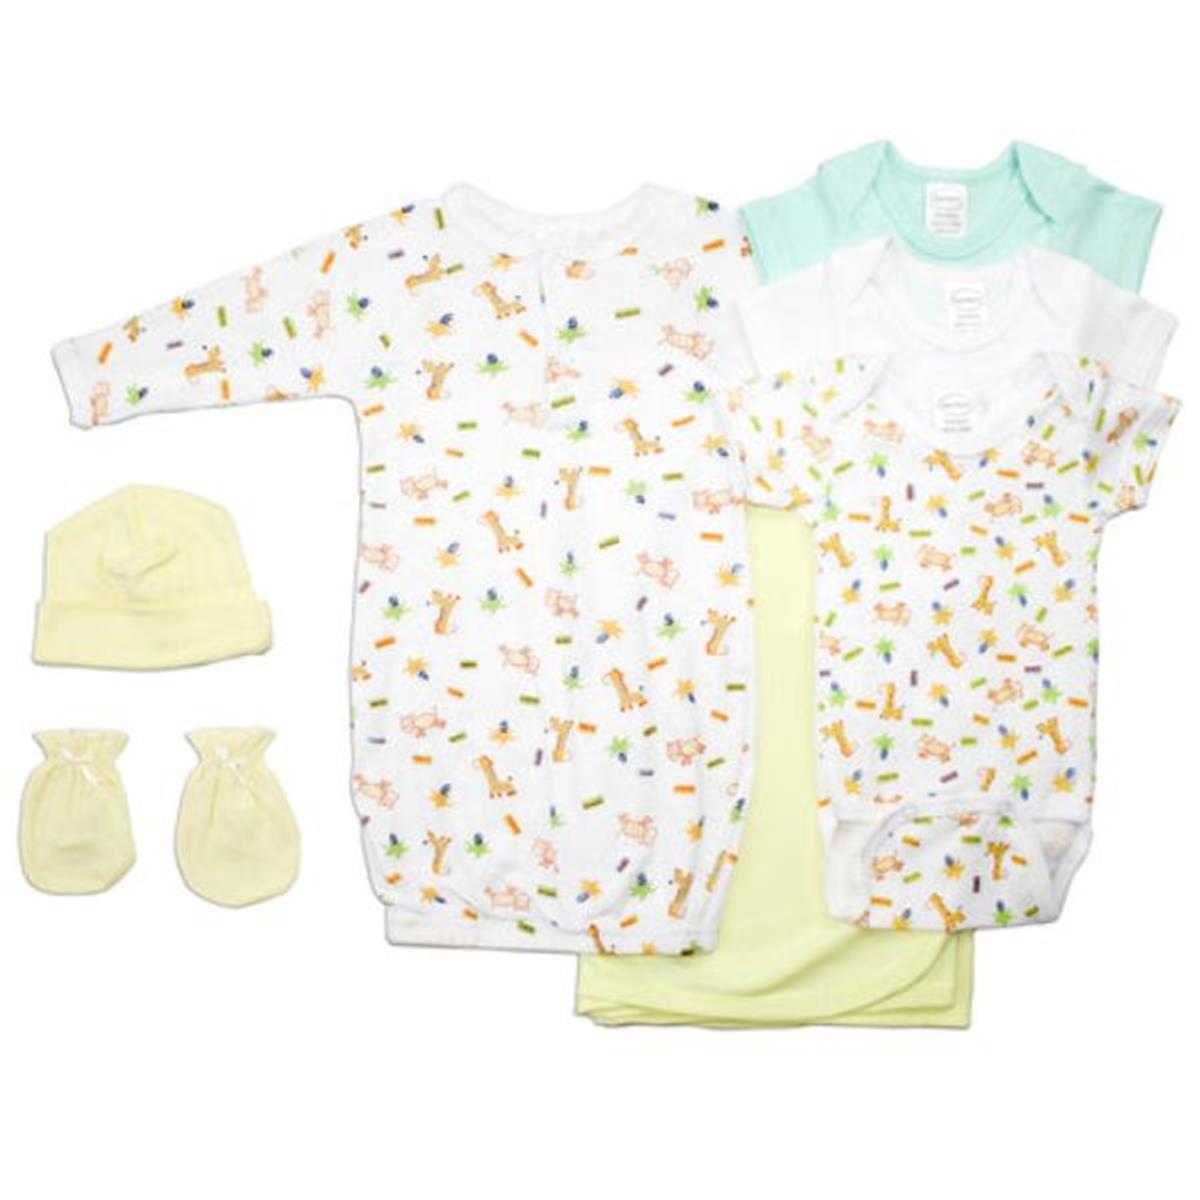 Bambini LS-0127 Neutral Newborn Baby Layette Baby Shower Gift Set&#44; White & Yellow - Newborn